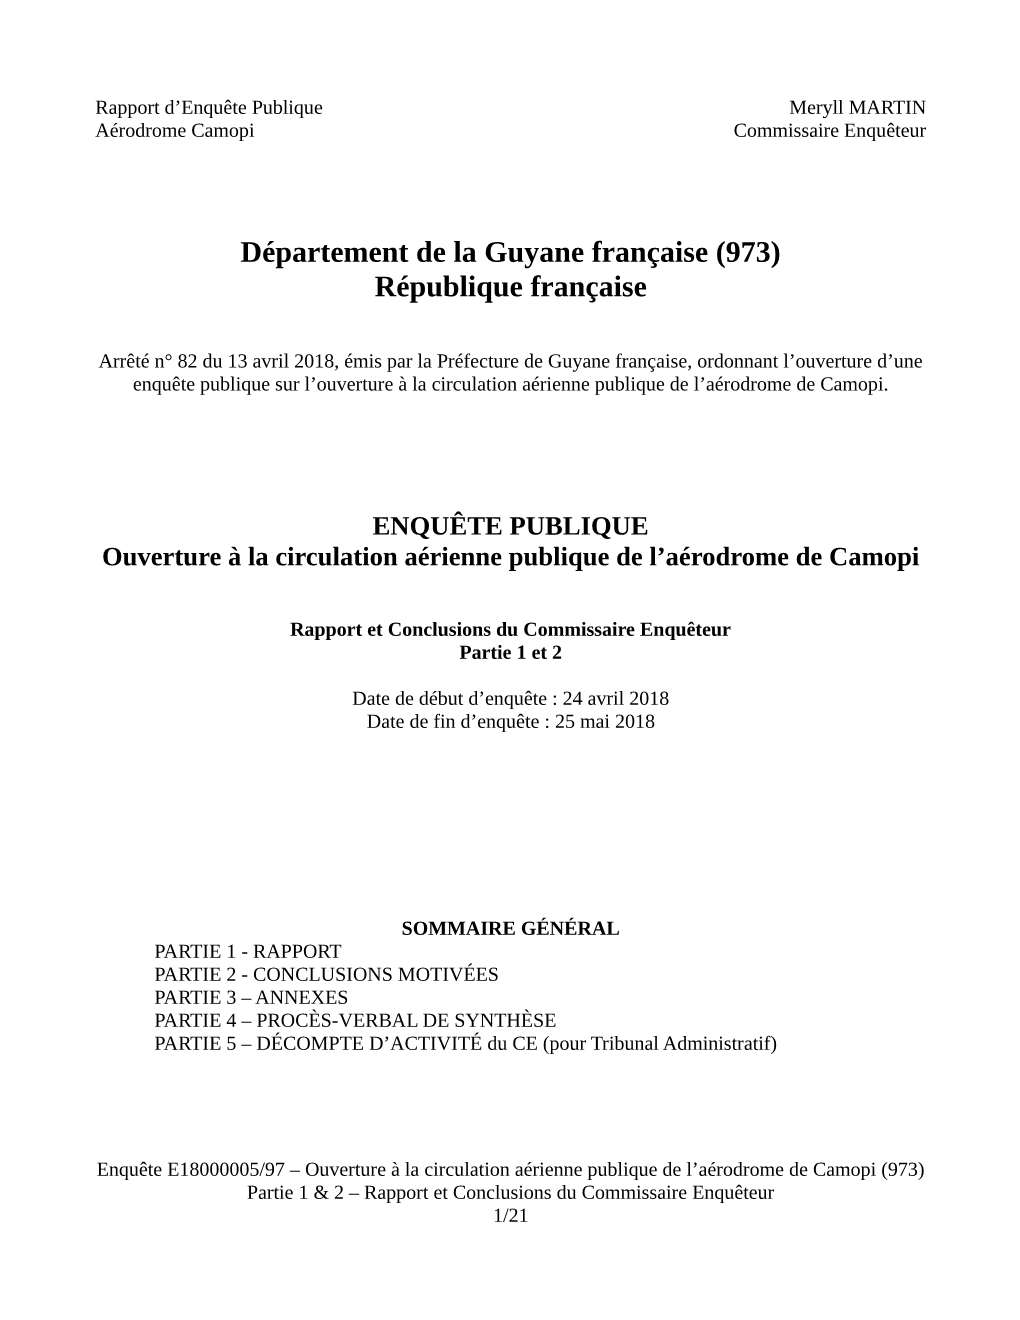 Département De La Guyane Française (973) République Française